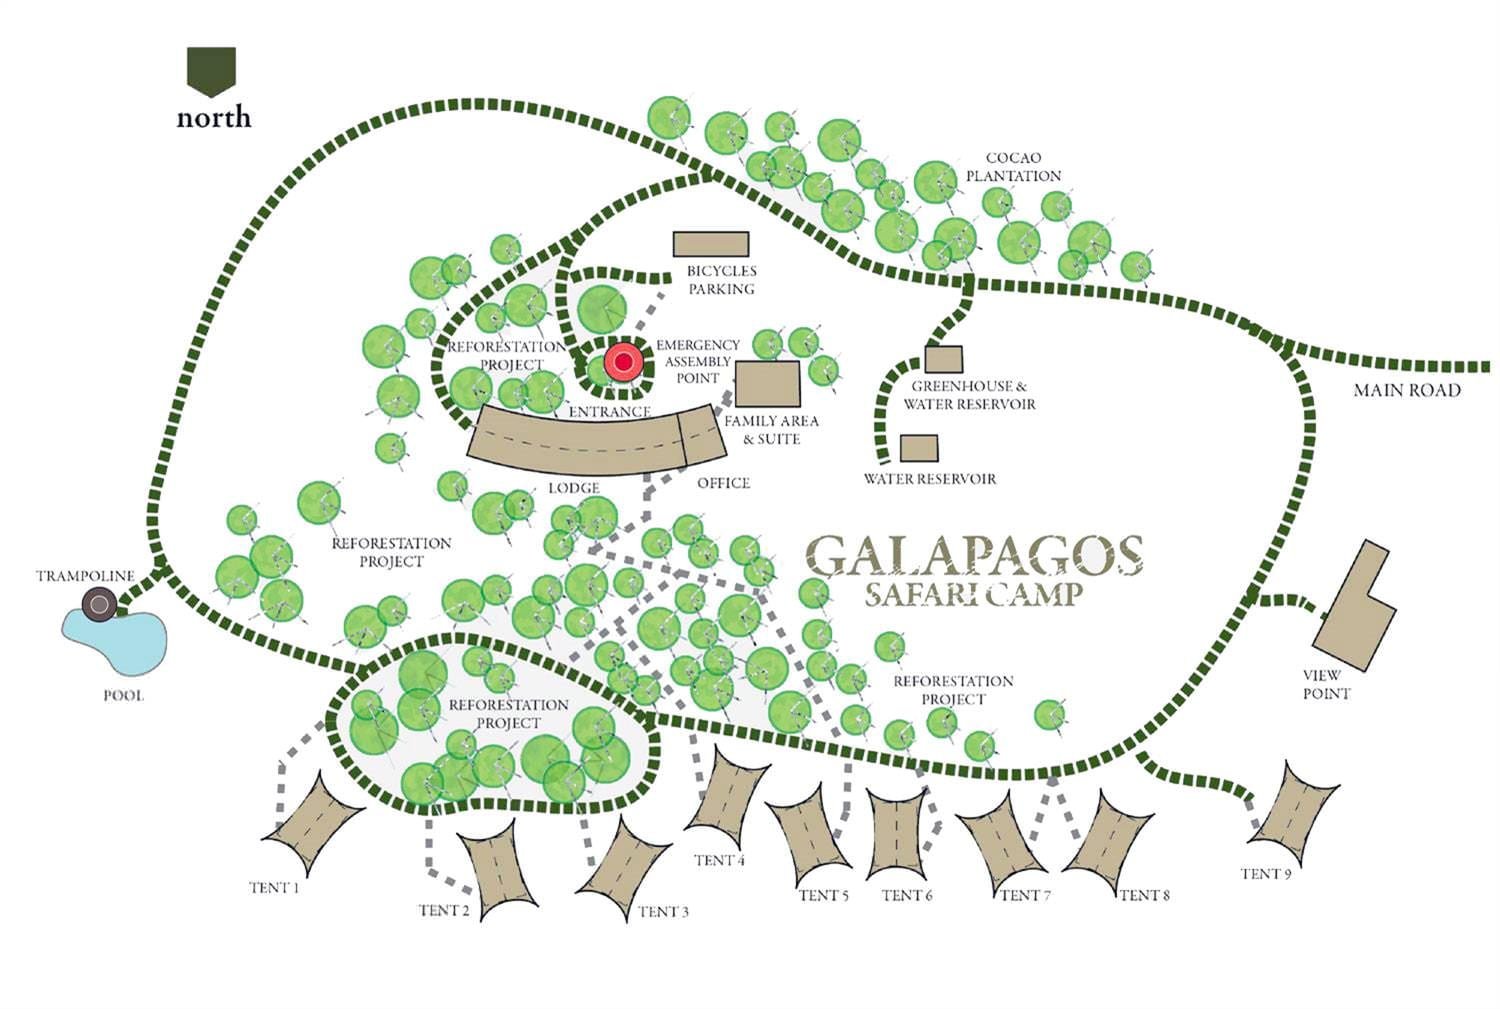 Galapagos Safari Camp map